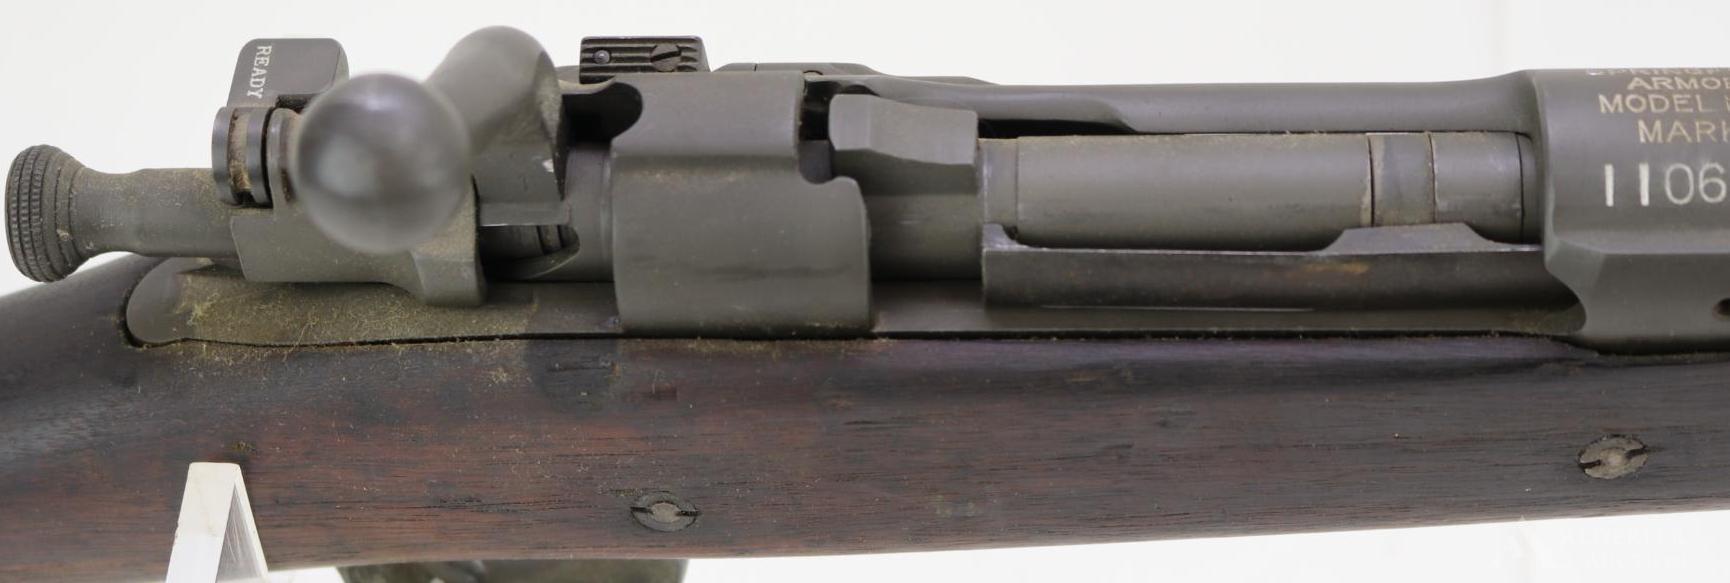 Springfield 1903 Mark I Bolt Action Rifle.